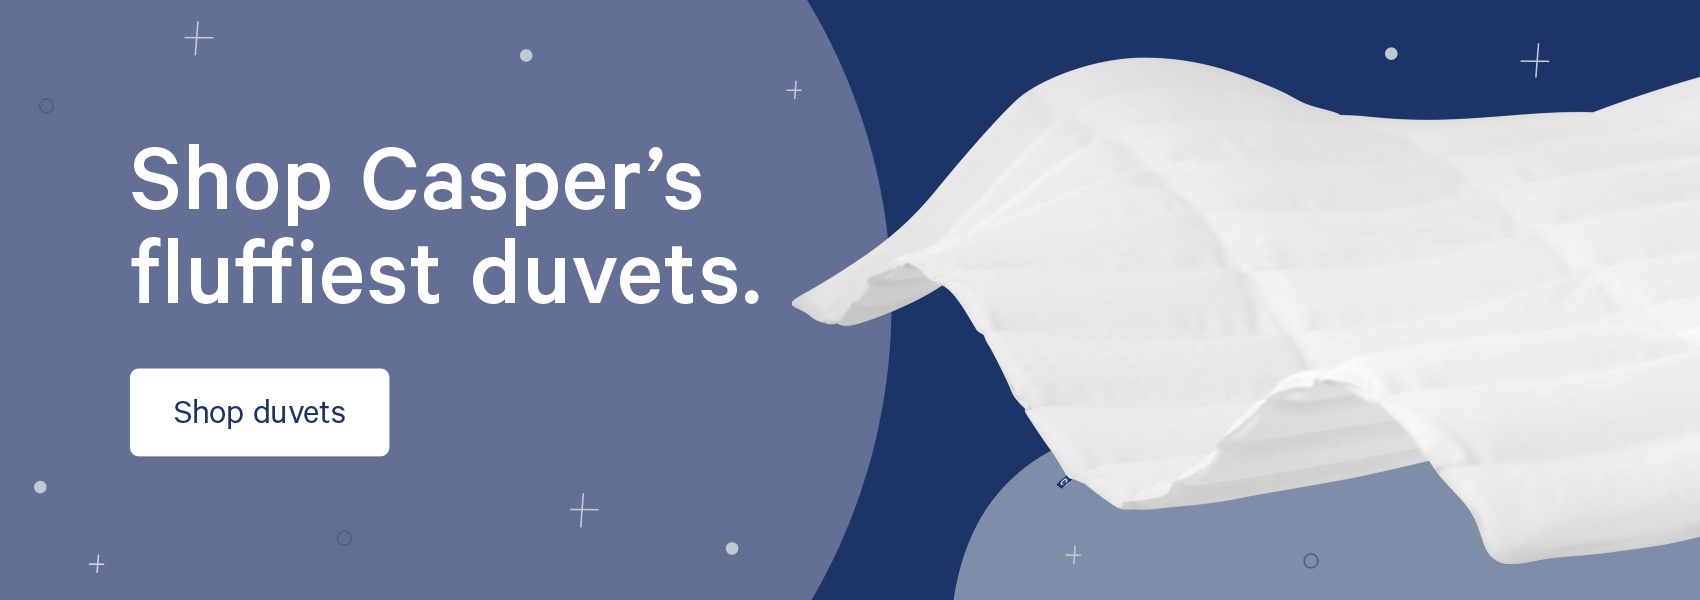 Shop Casper's fluffiest duvets. 